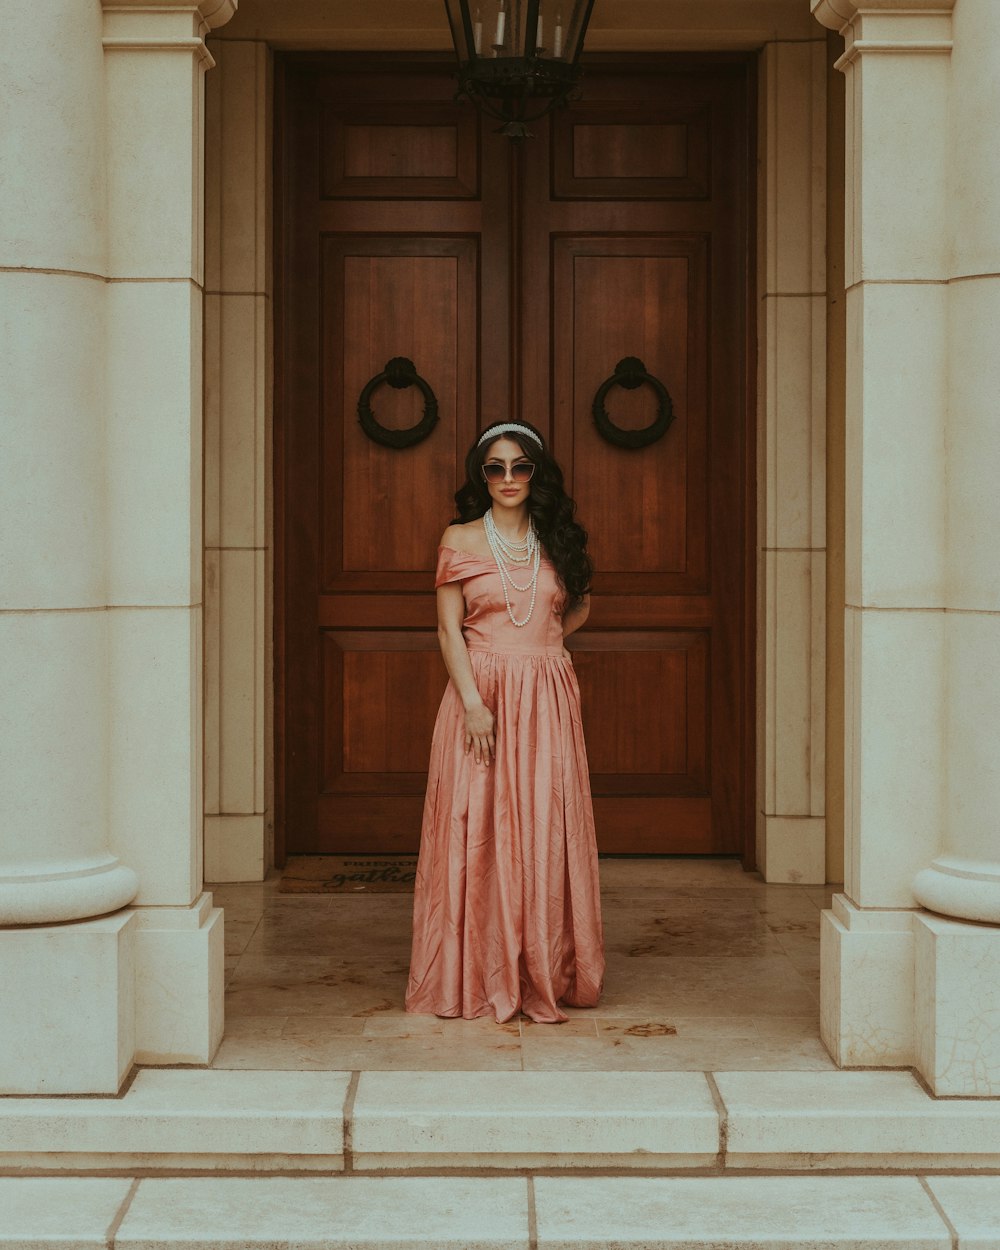 문 앞에 서 있는 분홍색 드레스를 입은 여자